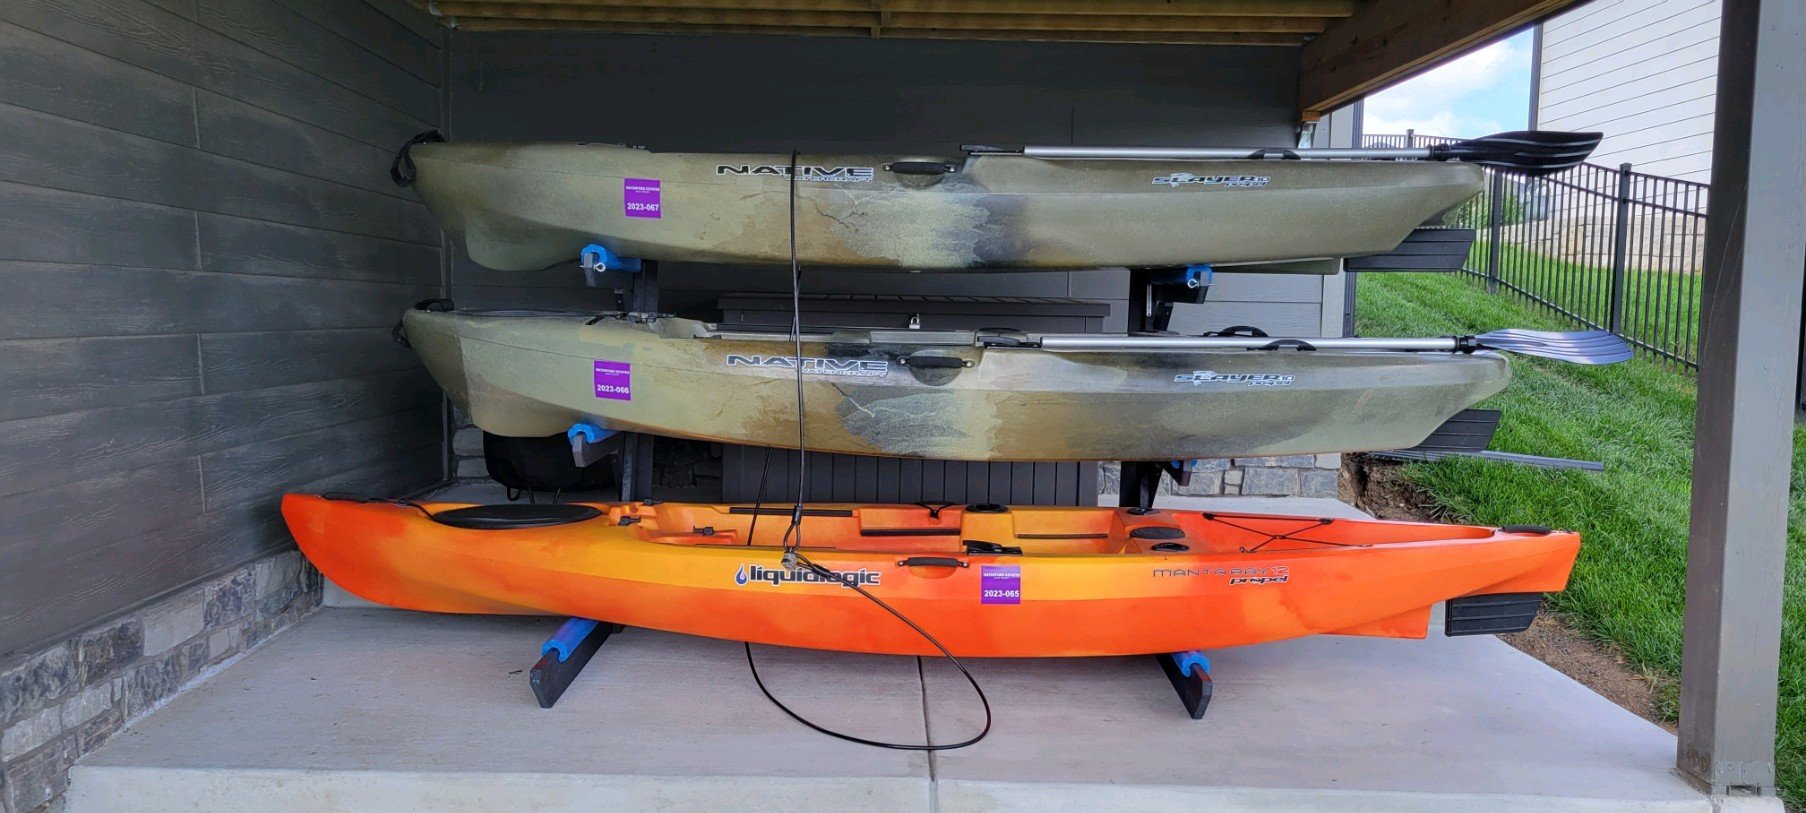 3 rack - kayak storage rack - kayak rack - SUP rack - canoe rack - 3 units - Storage Rack Solutions - Rack in a Box Series